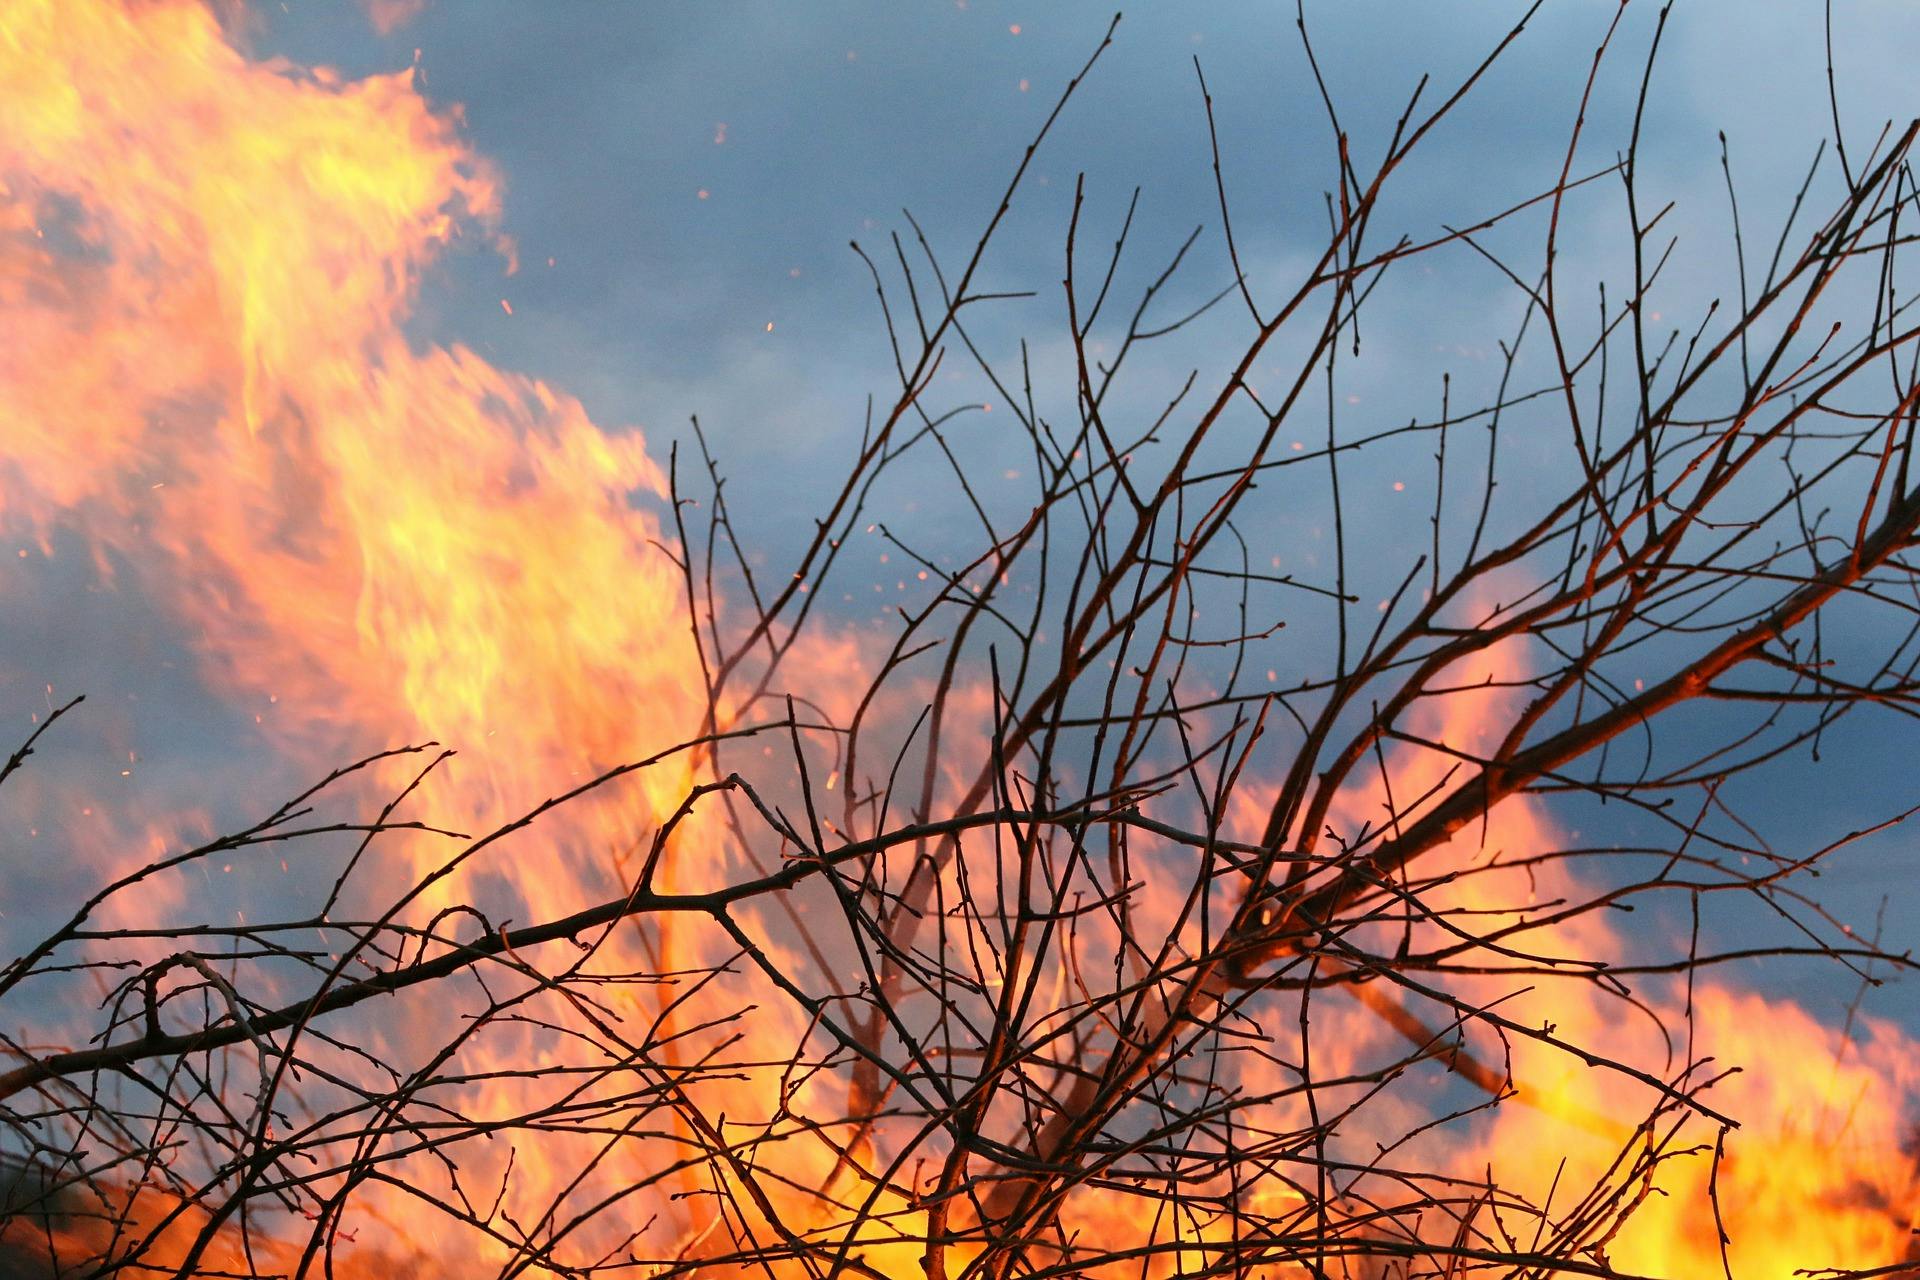 Bushfire burning